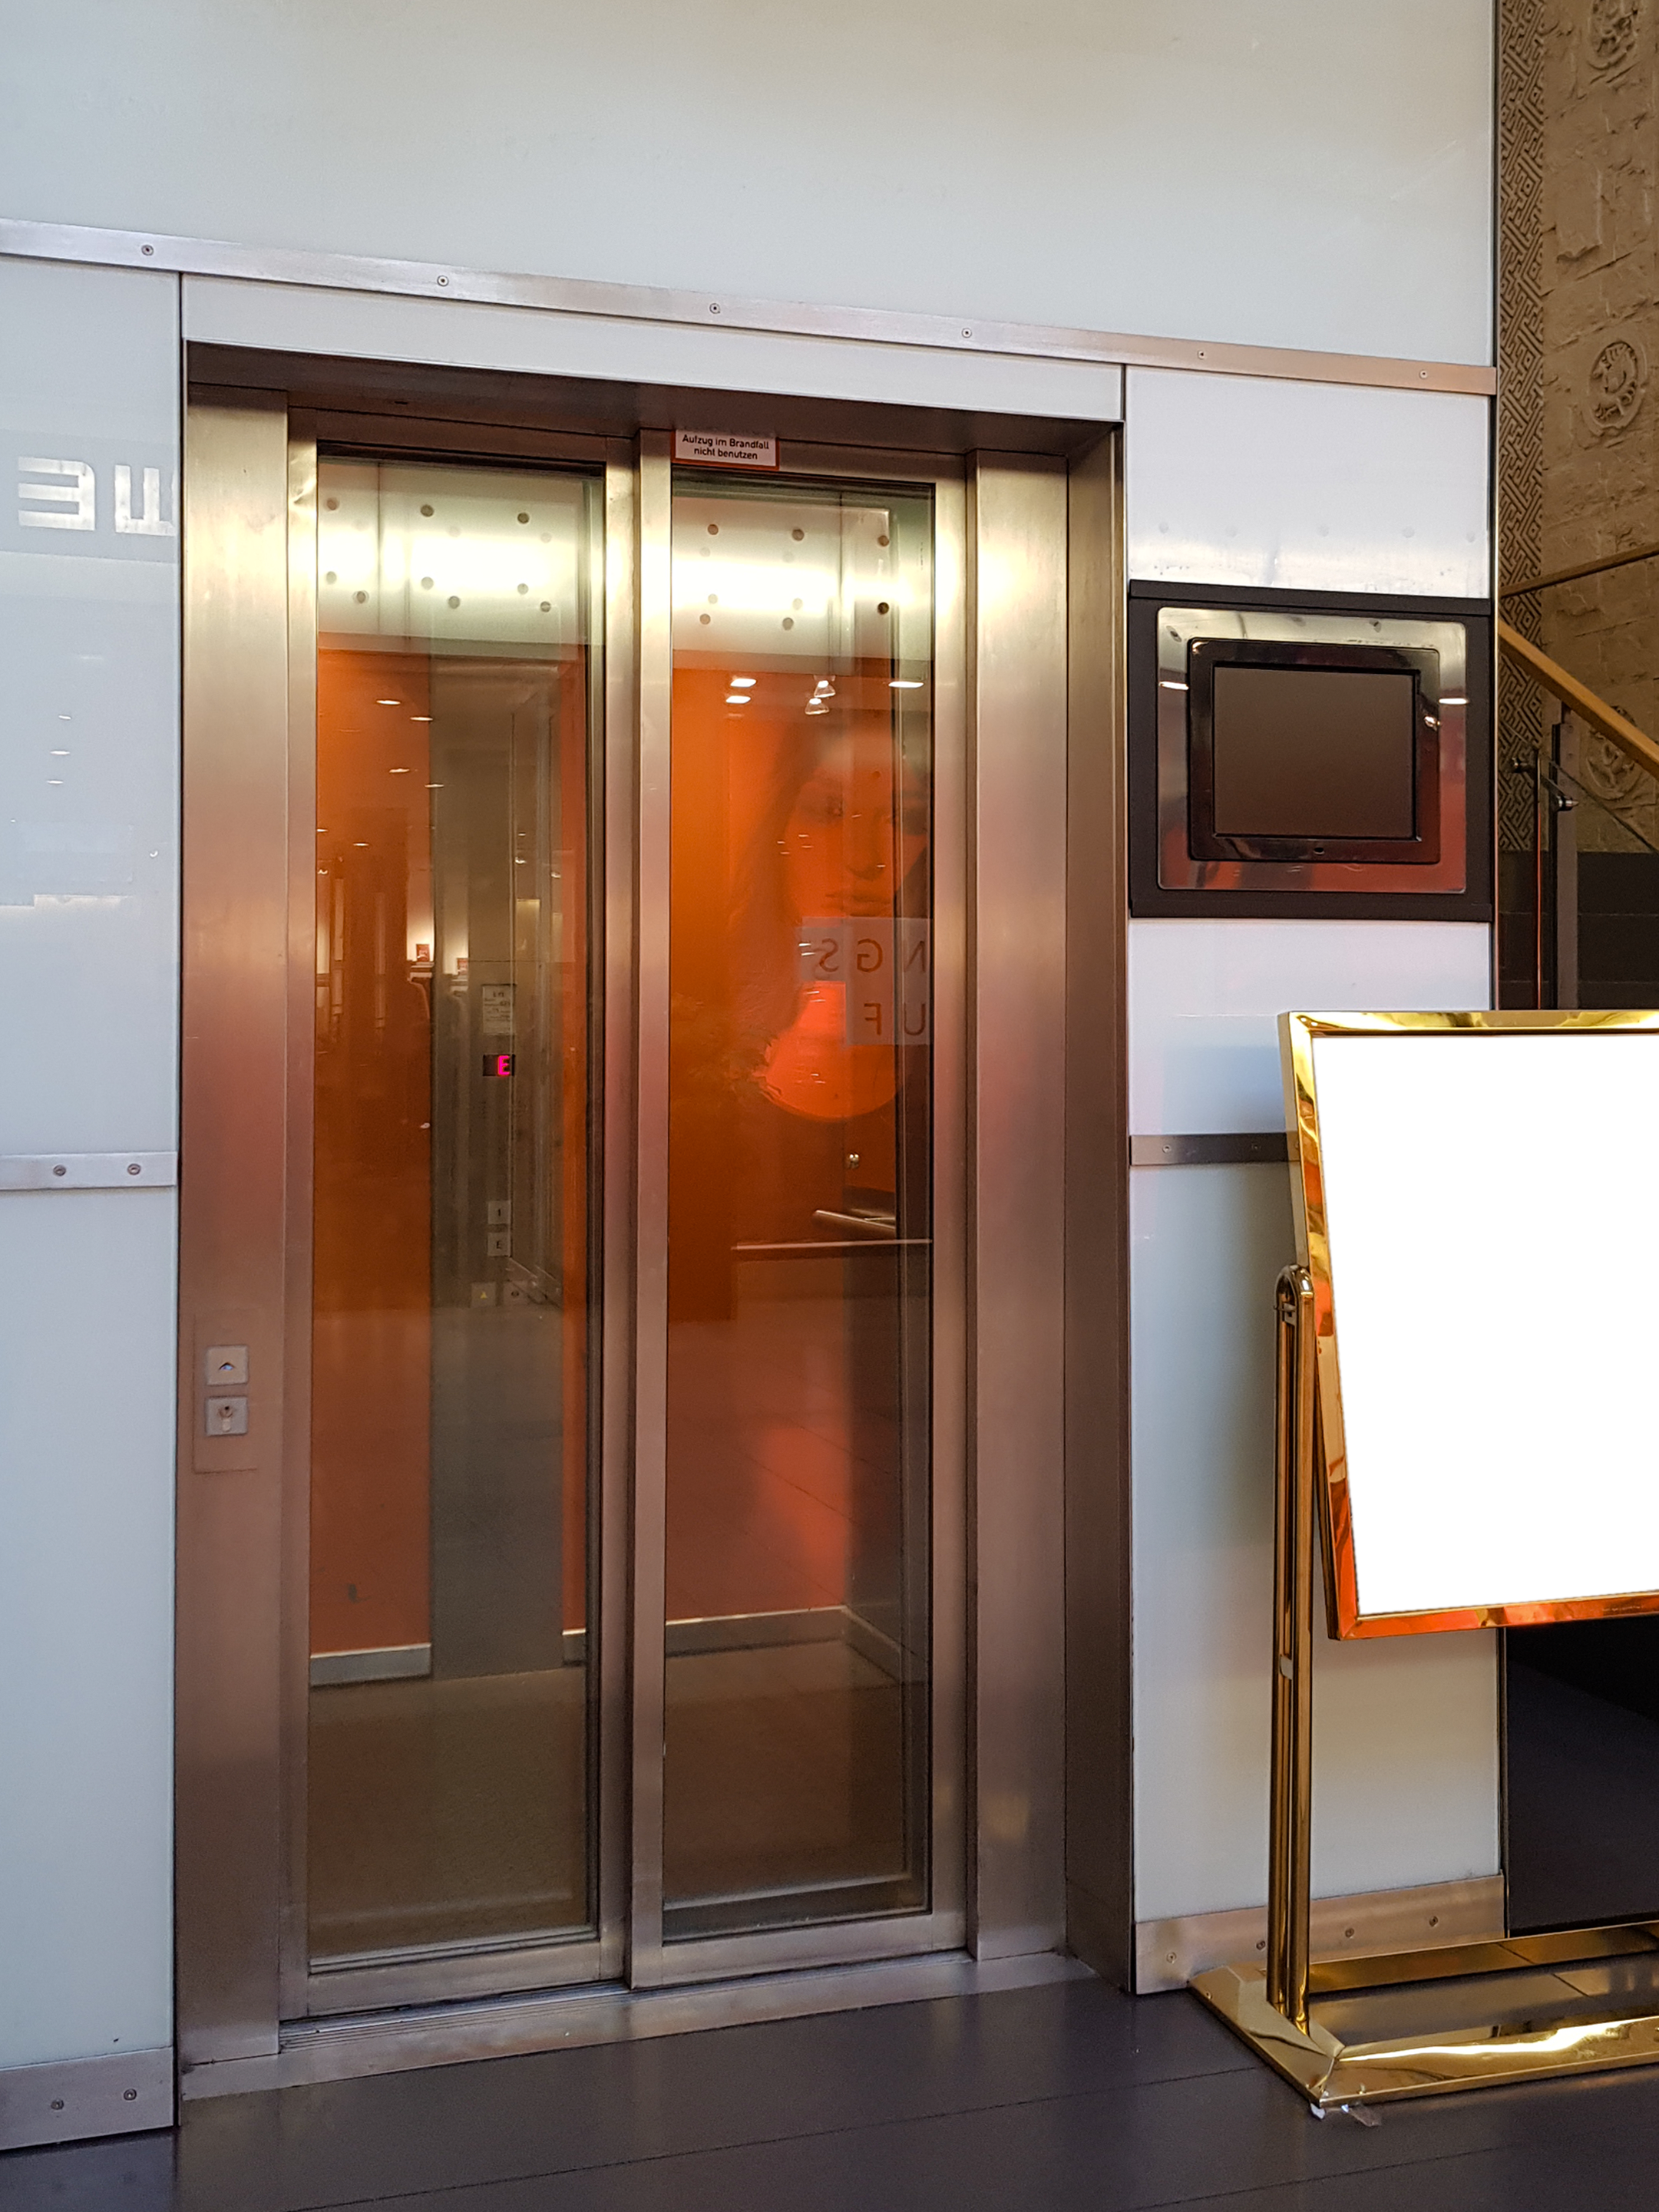 In Essen-Mitte realisierte der Edelstahl-Spezialist Nappenfeld für den Aufzug des Geschäftshauses einen neuen Edelstahl-Rahmen, der mit mattem Glas verschönert wurde